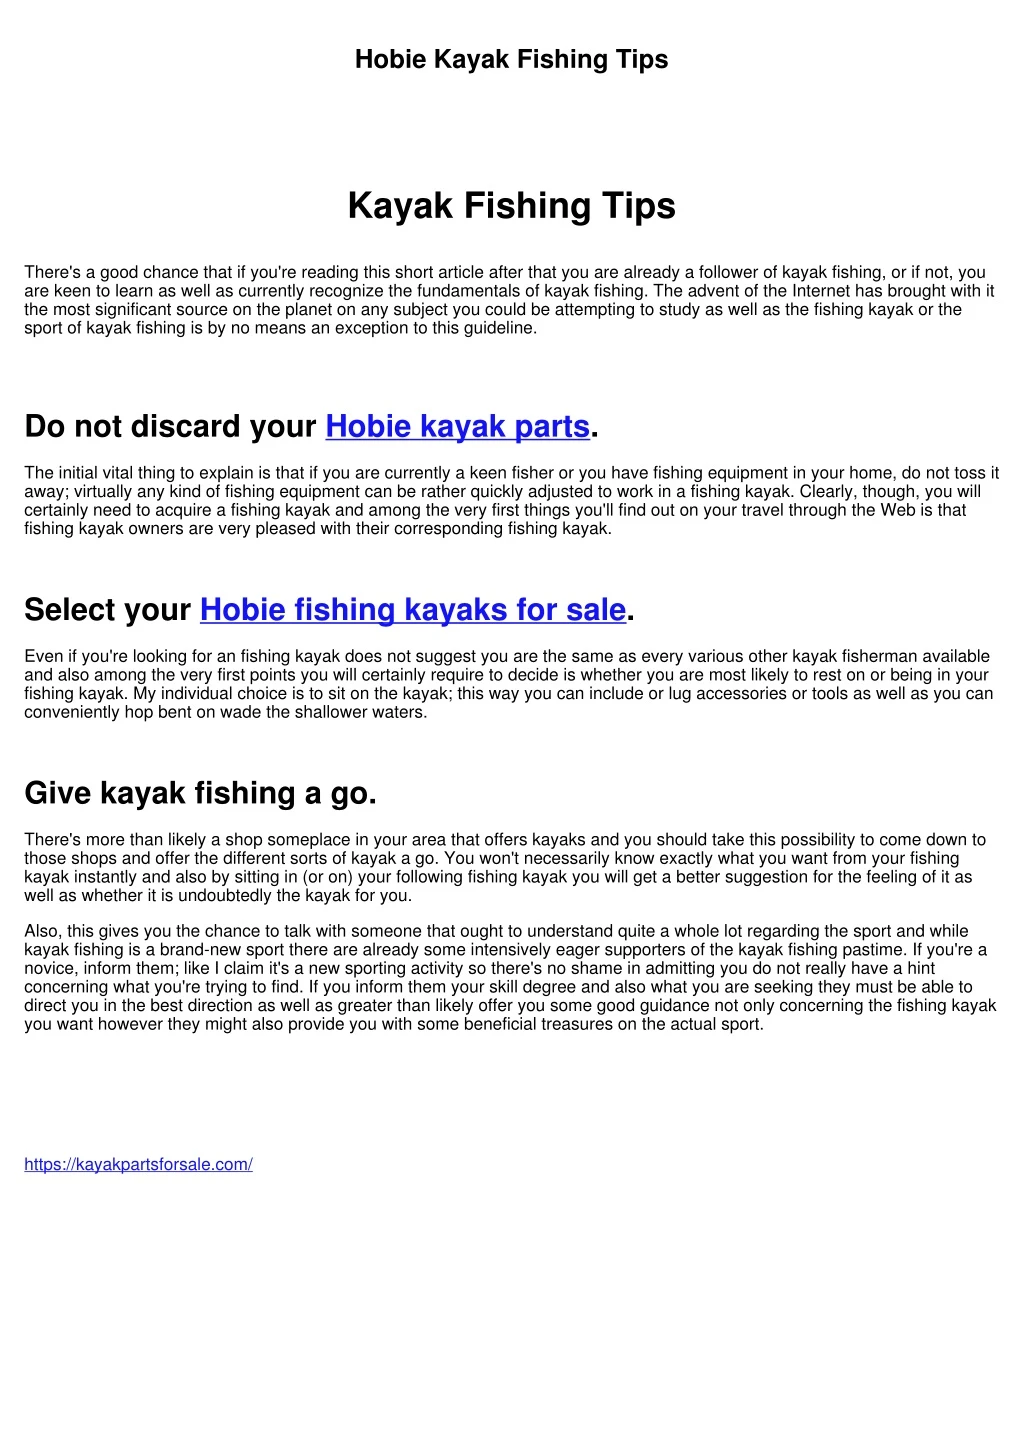 hobie kayak fishing tips